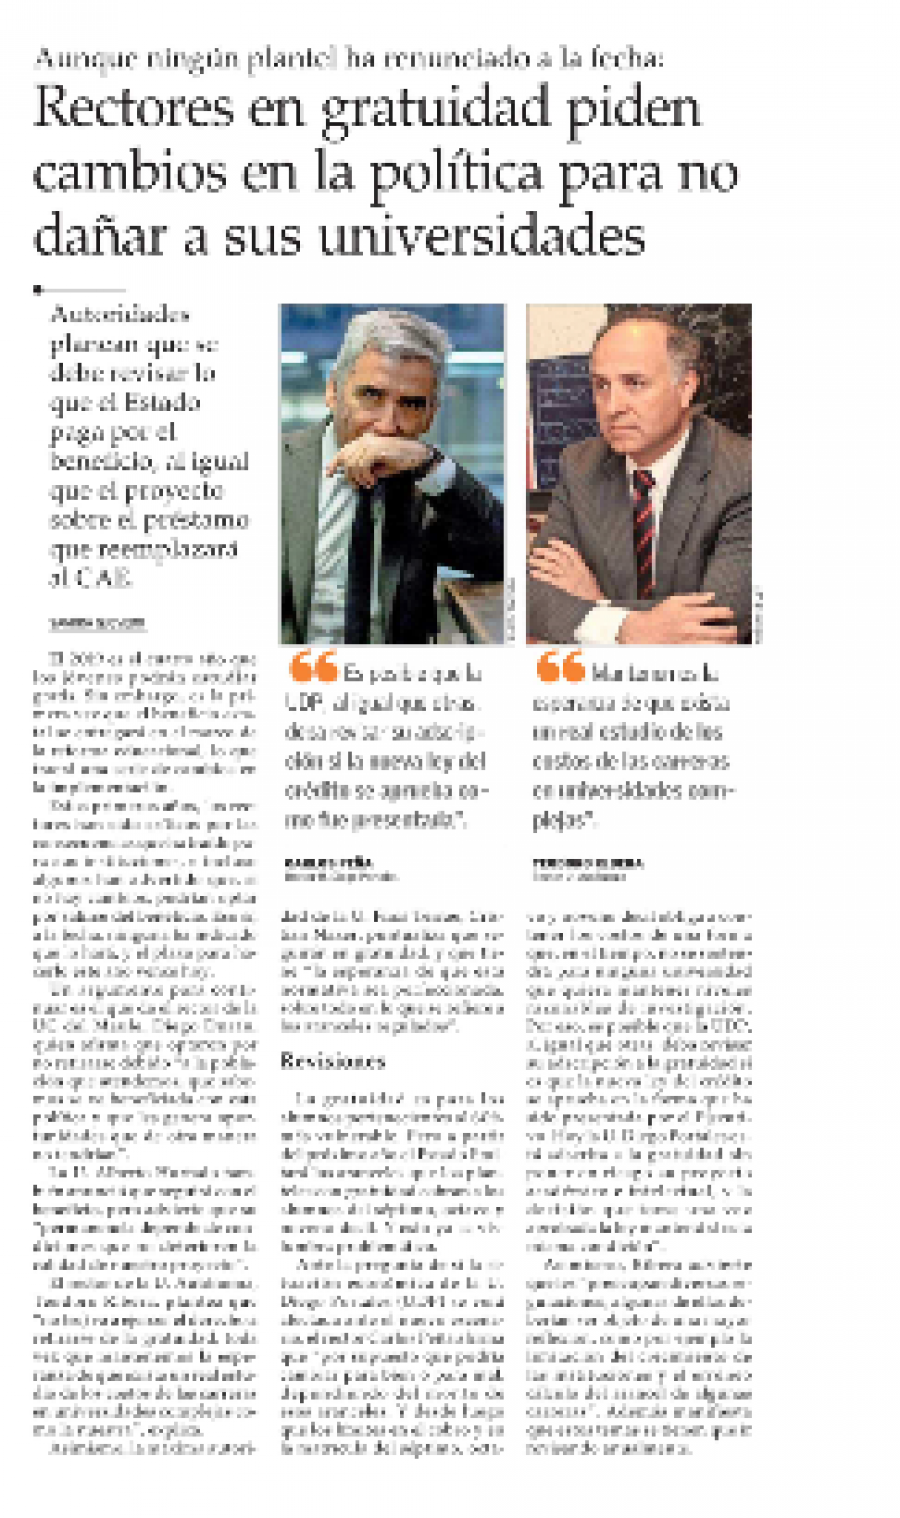 30 de julio en El Mercurio: “Rectores en gratuidad piden cambios en la política para no dañar a sus universidades”